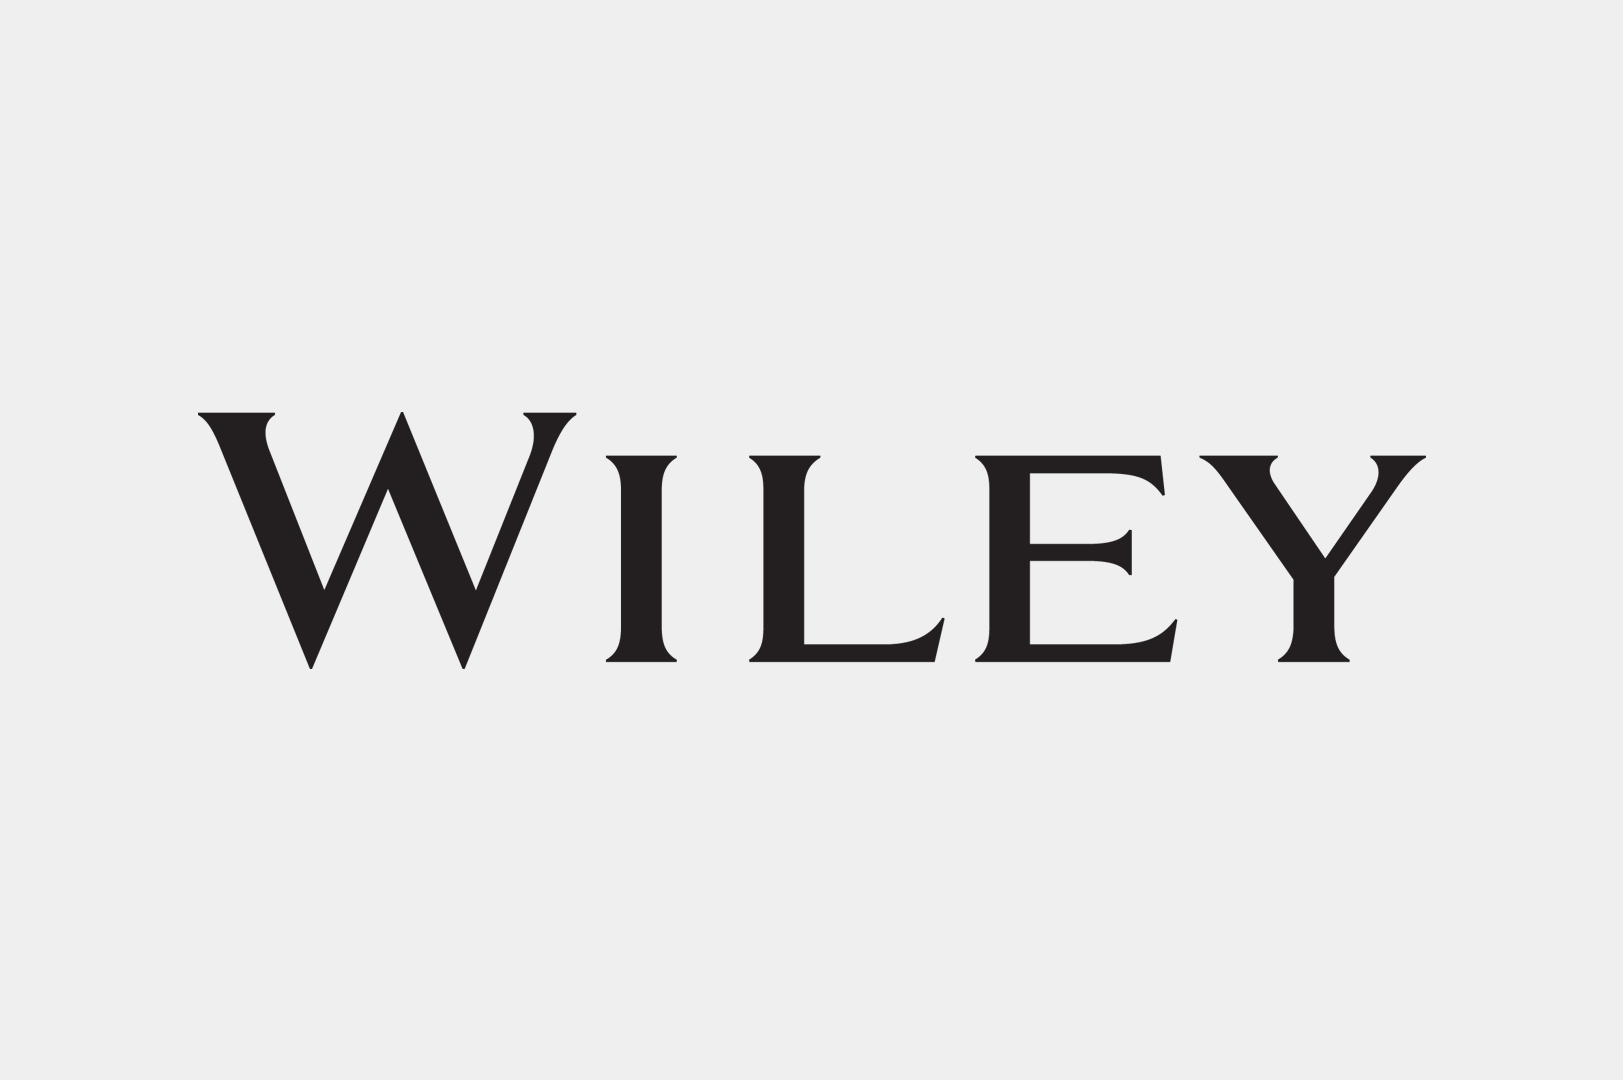 wiley logo